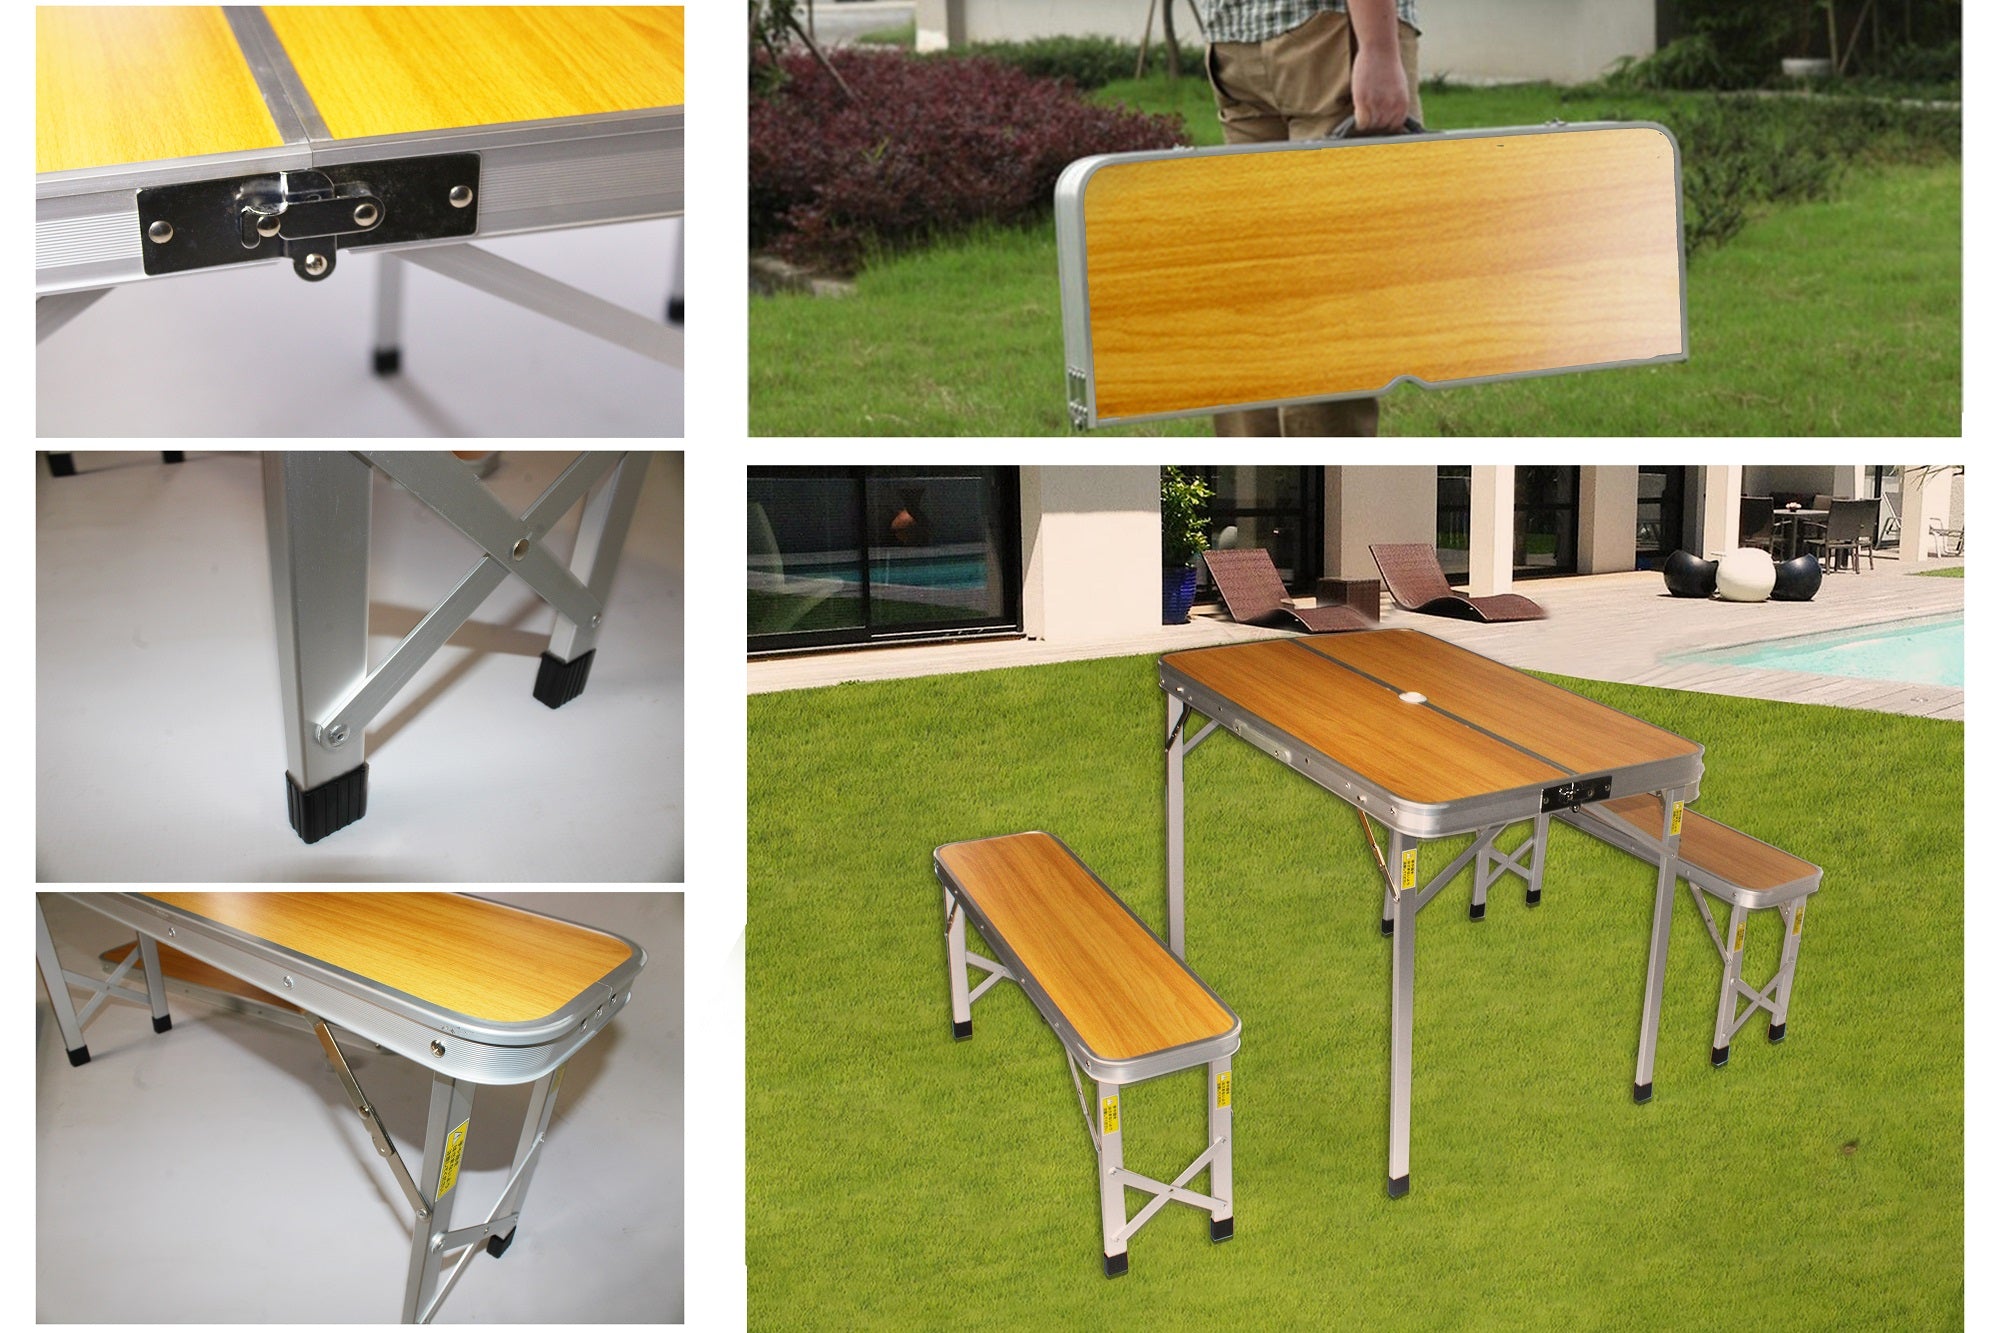 90x60cm Portable Outdoor Aluminium Folding Table & Bench Set